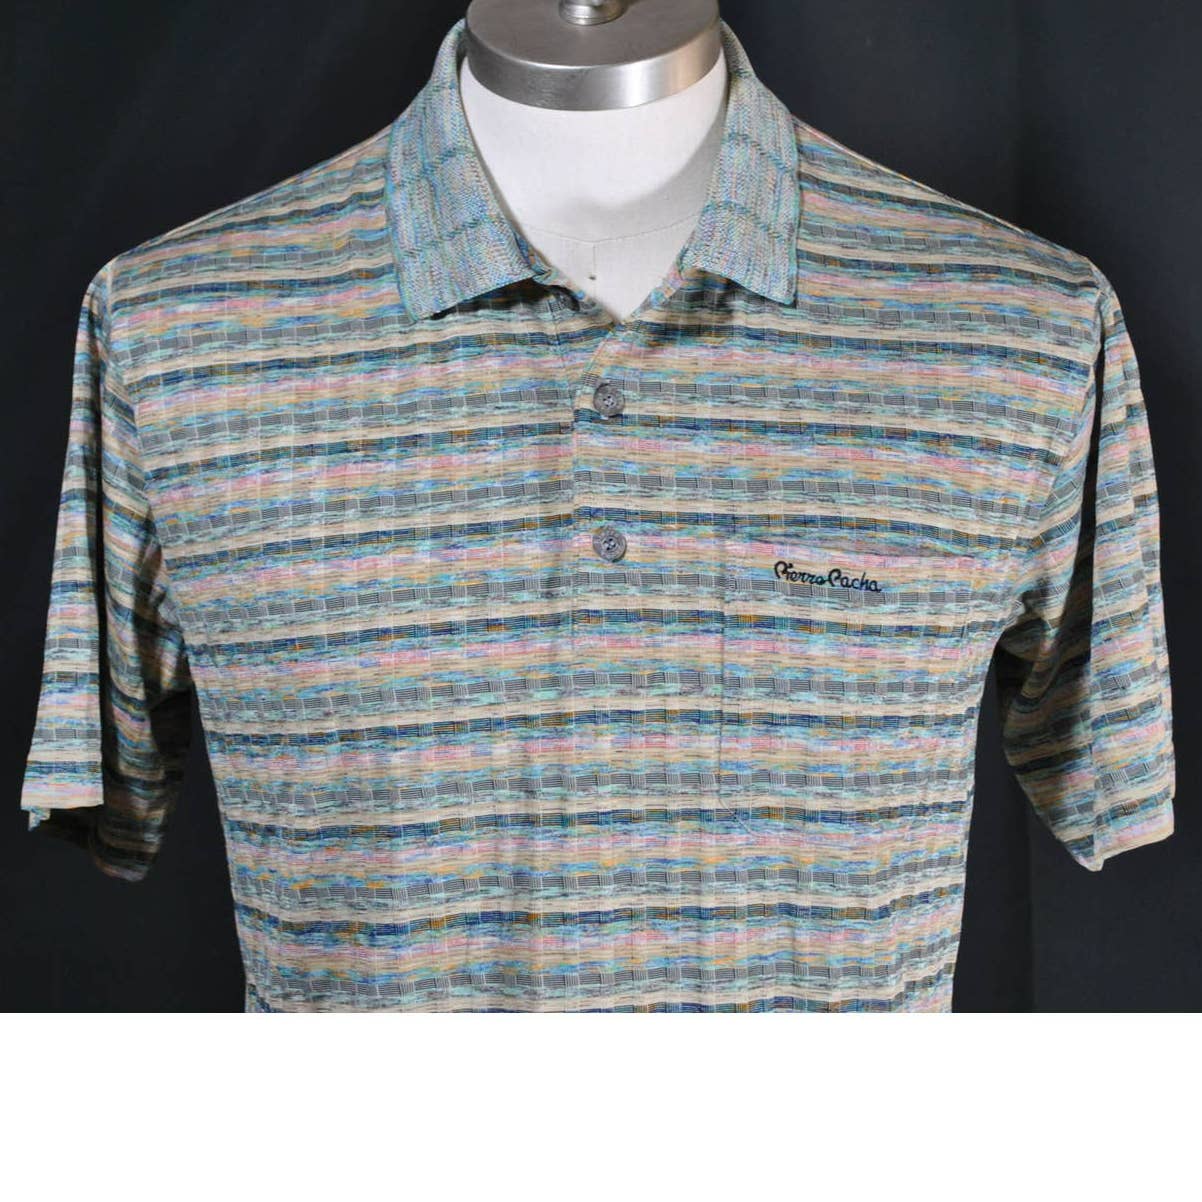 Vintage Pierre Patcha Multicolor Polo Shirt - M